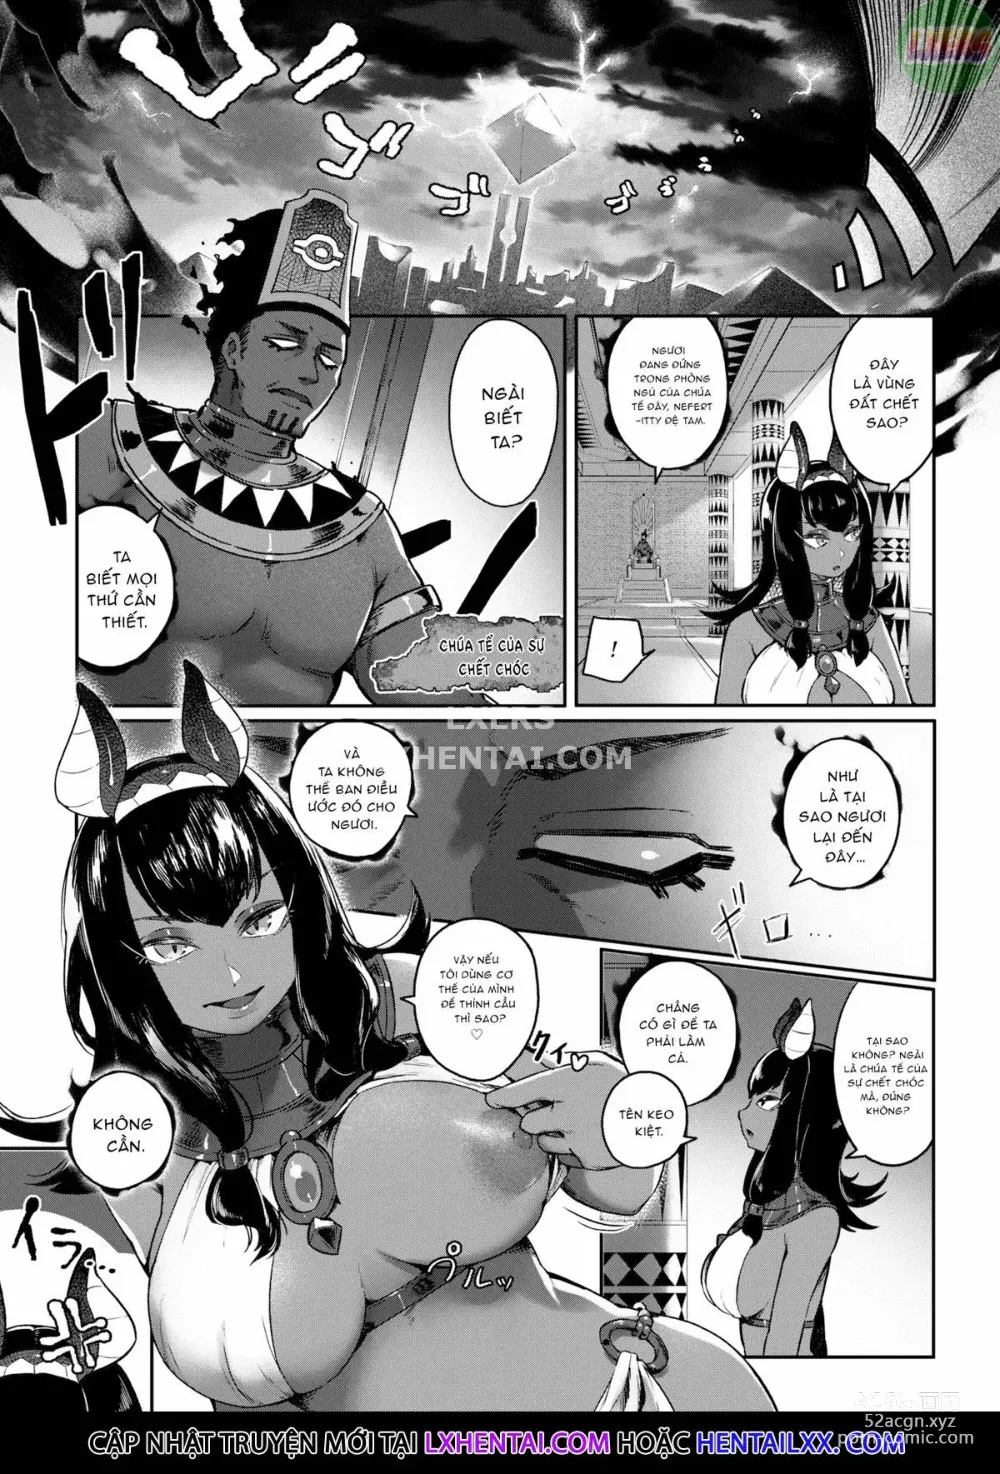 Page 8 of manga Doerogurifu (uncensored)